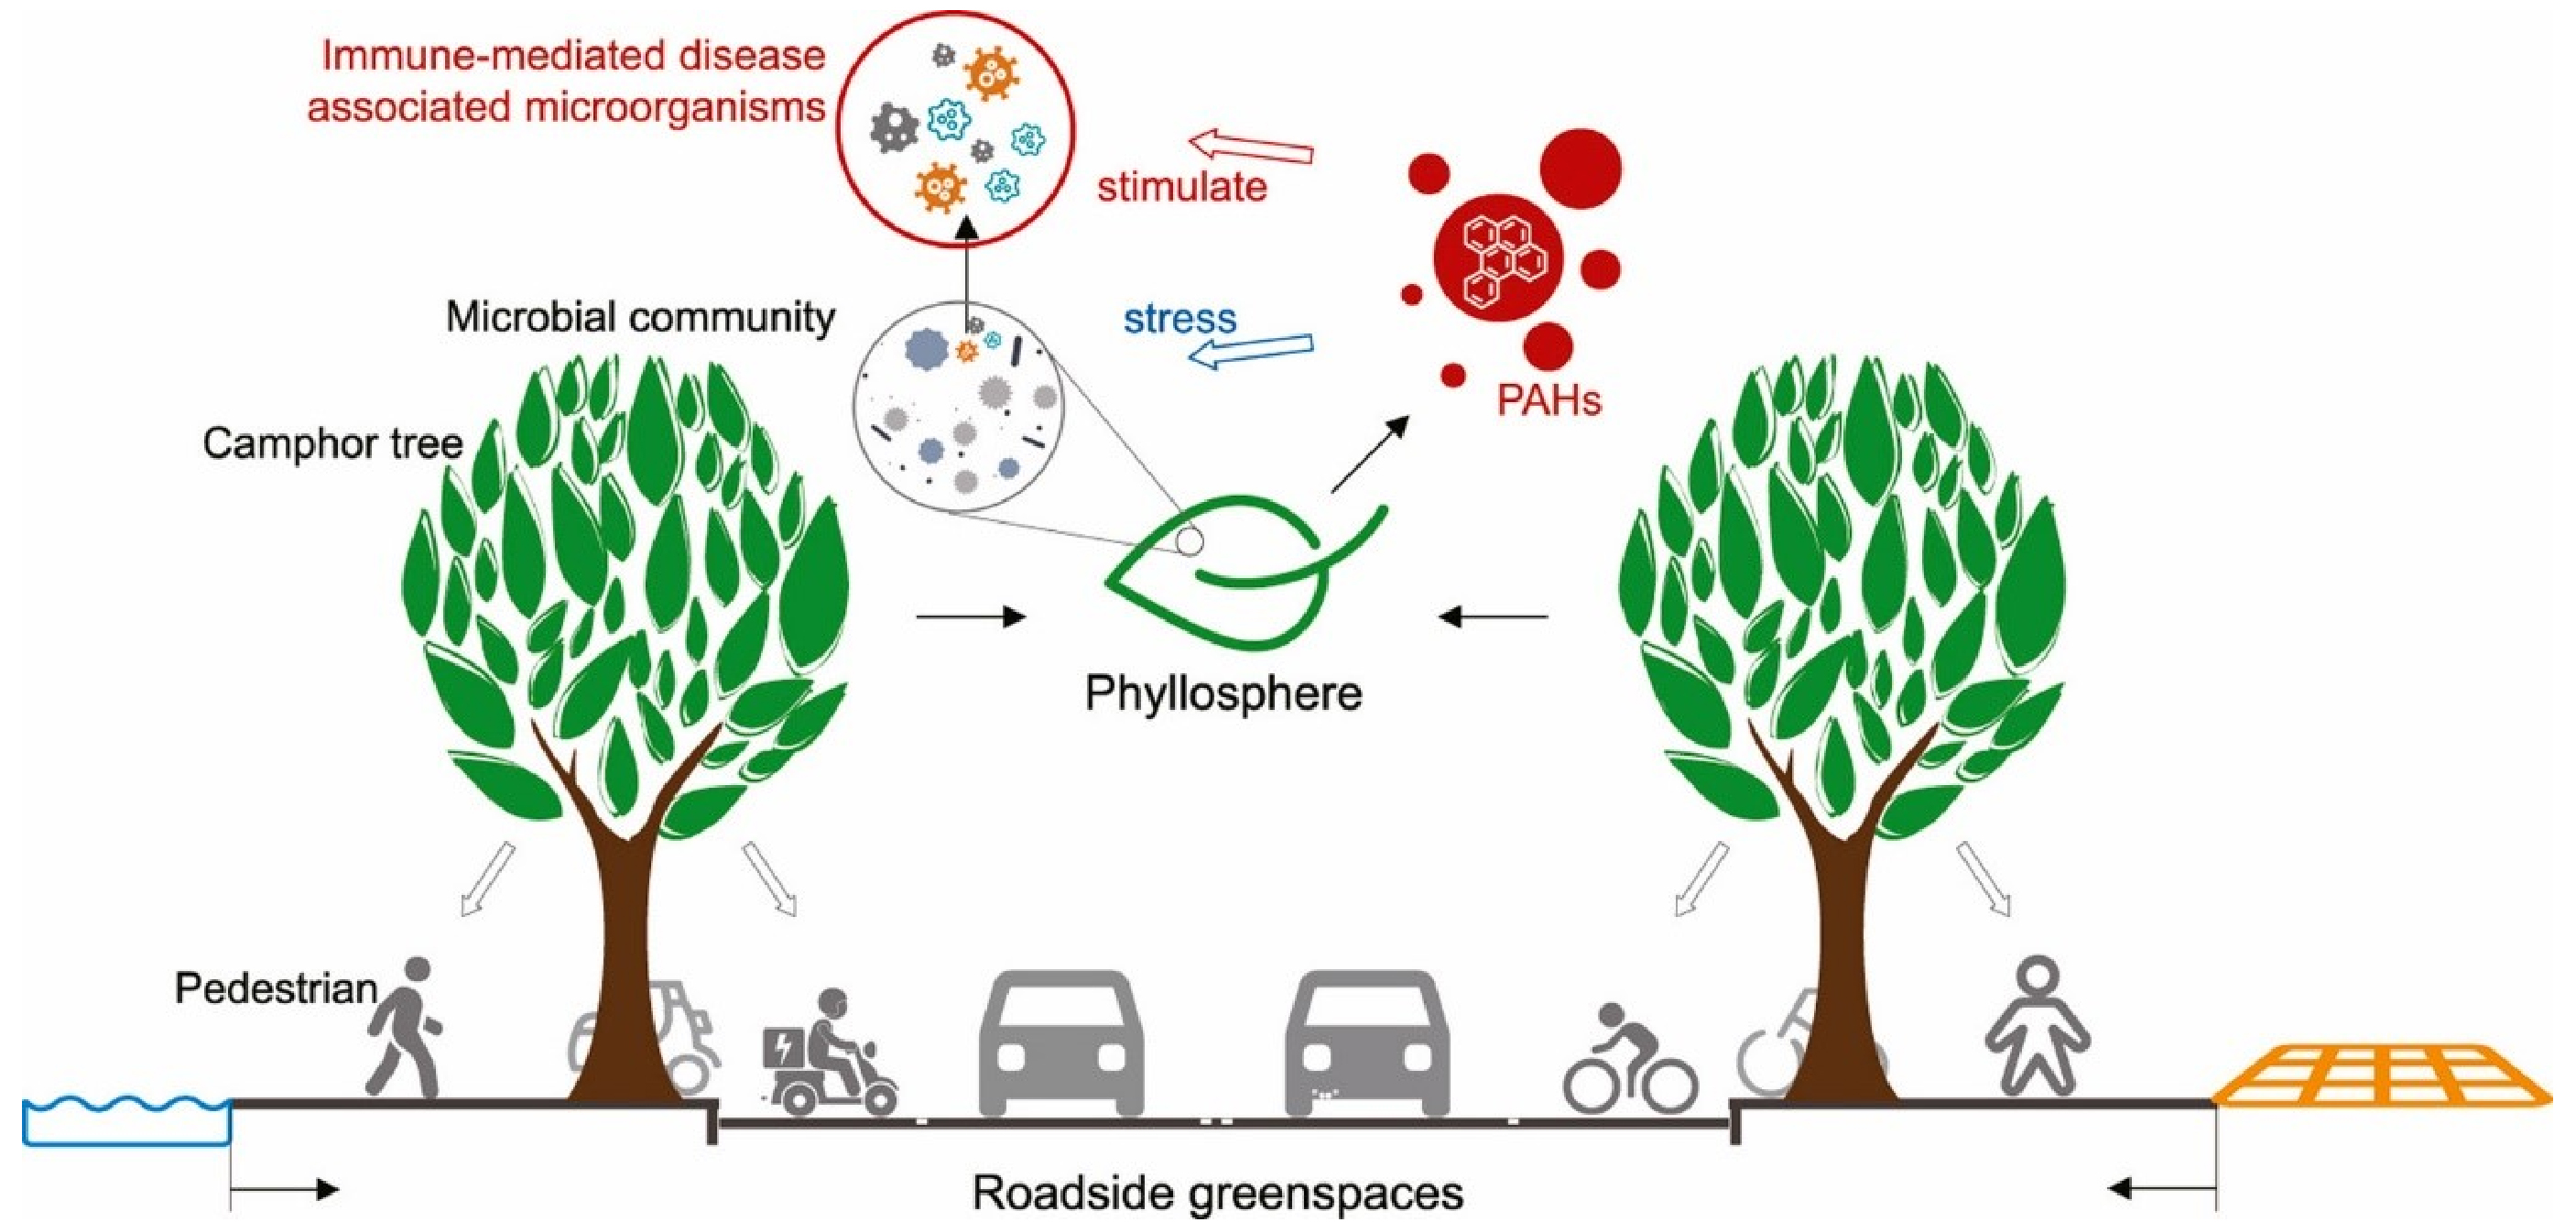 上海市路边绿地叶际免疫介导的疾病相关微生物群落对PAH胁迫的响应